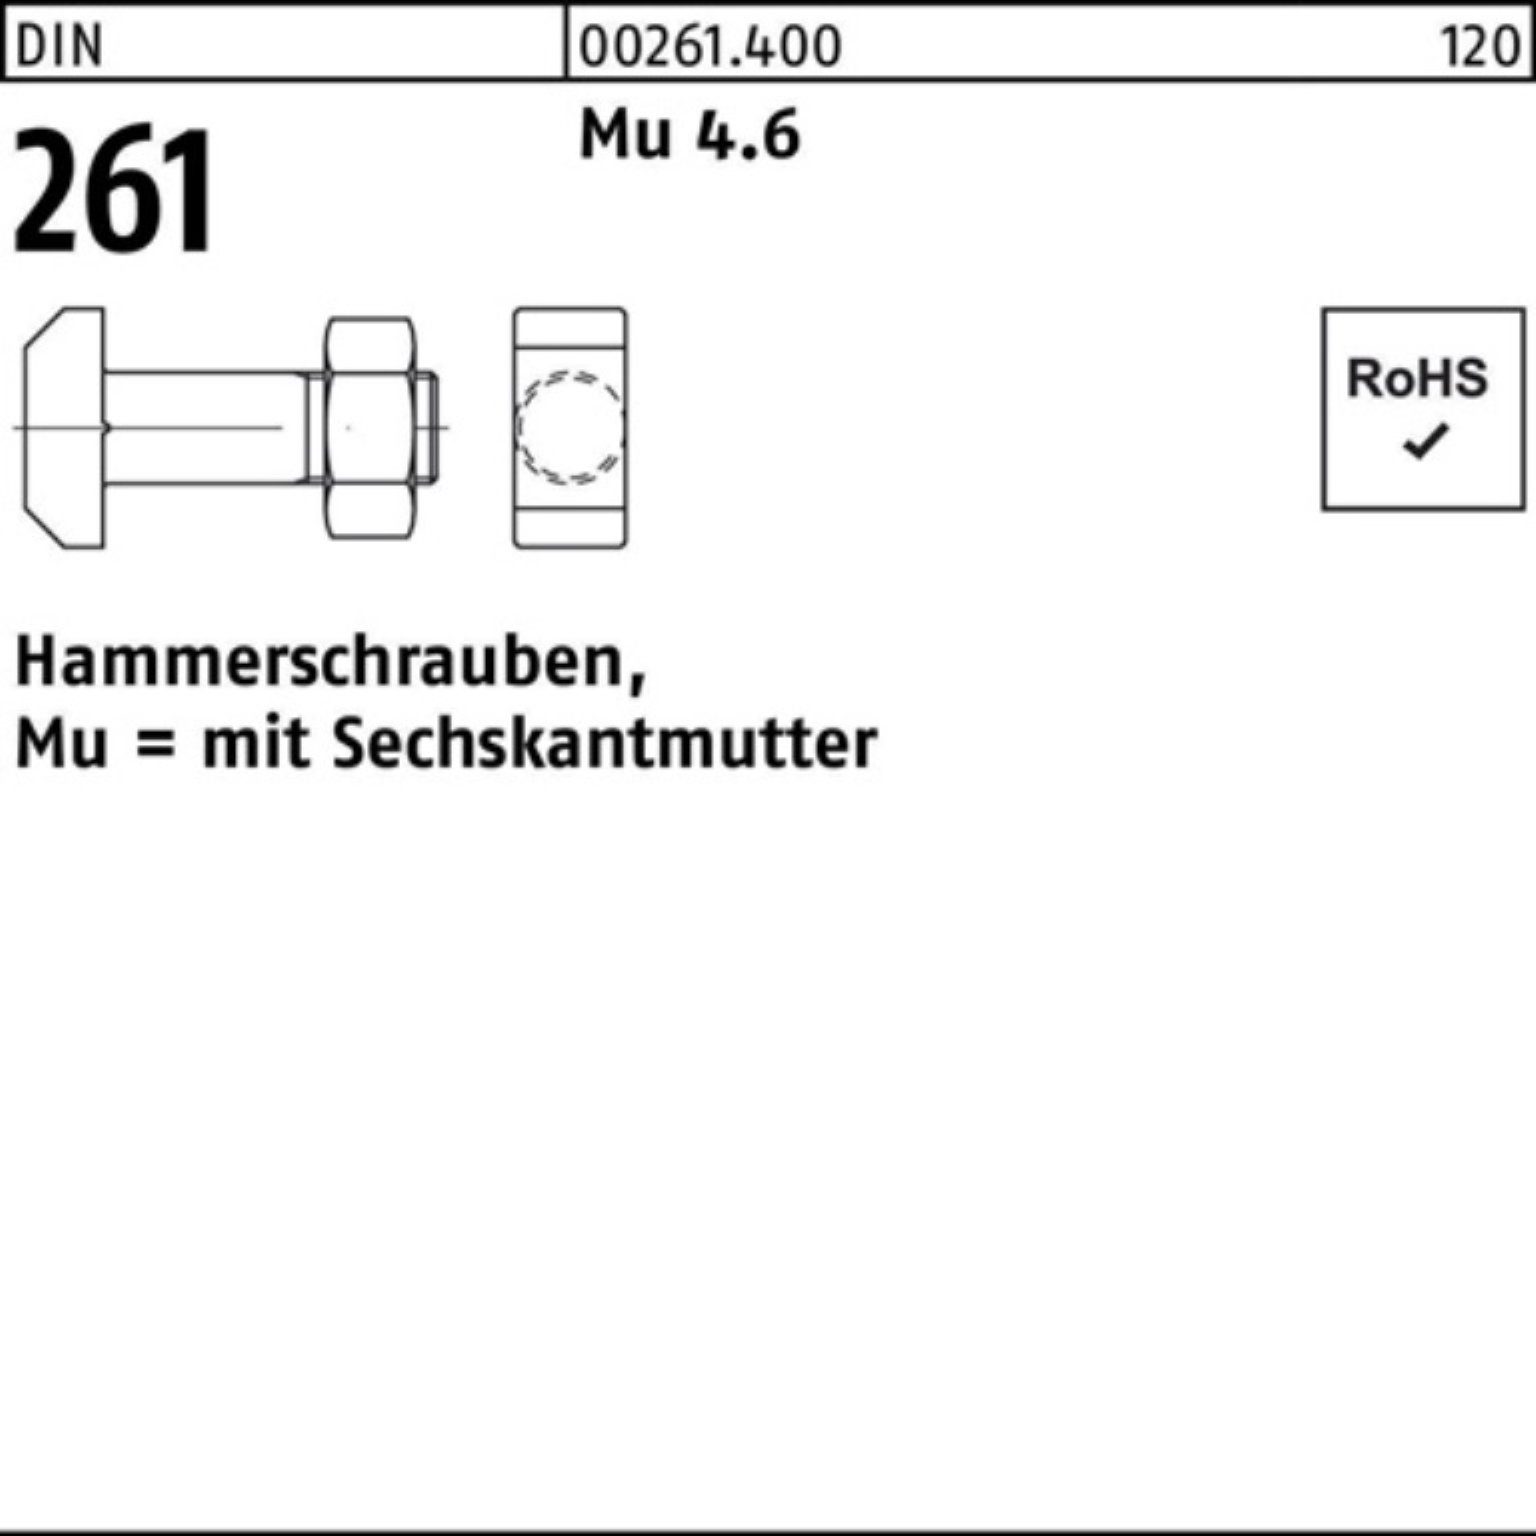 Reyher Schraube 100er Pack Hammerschraube DIN 261 Sechskantmutter M10x 60 Mu 4.6 25 St